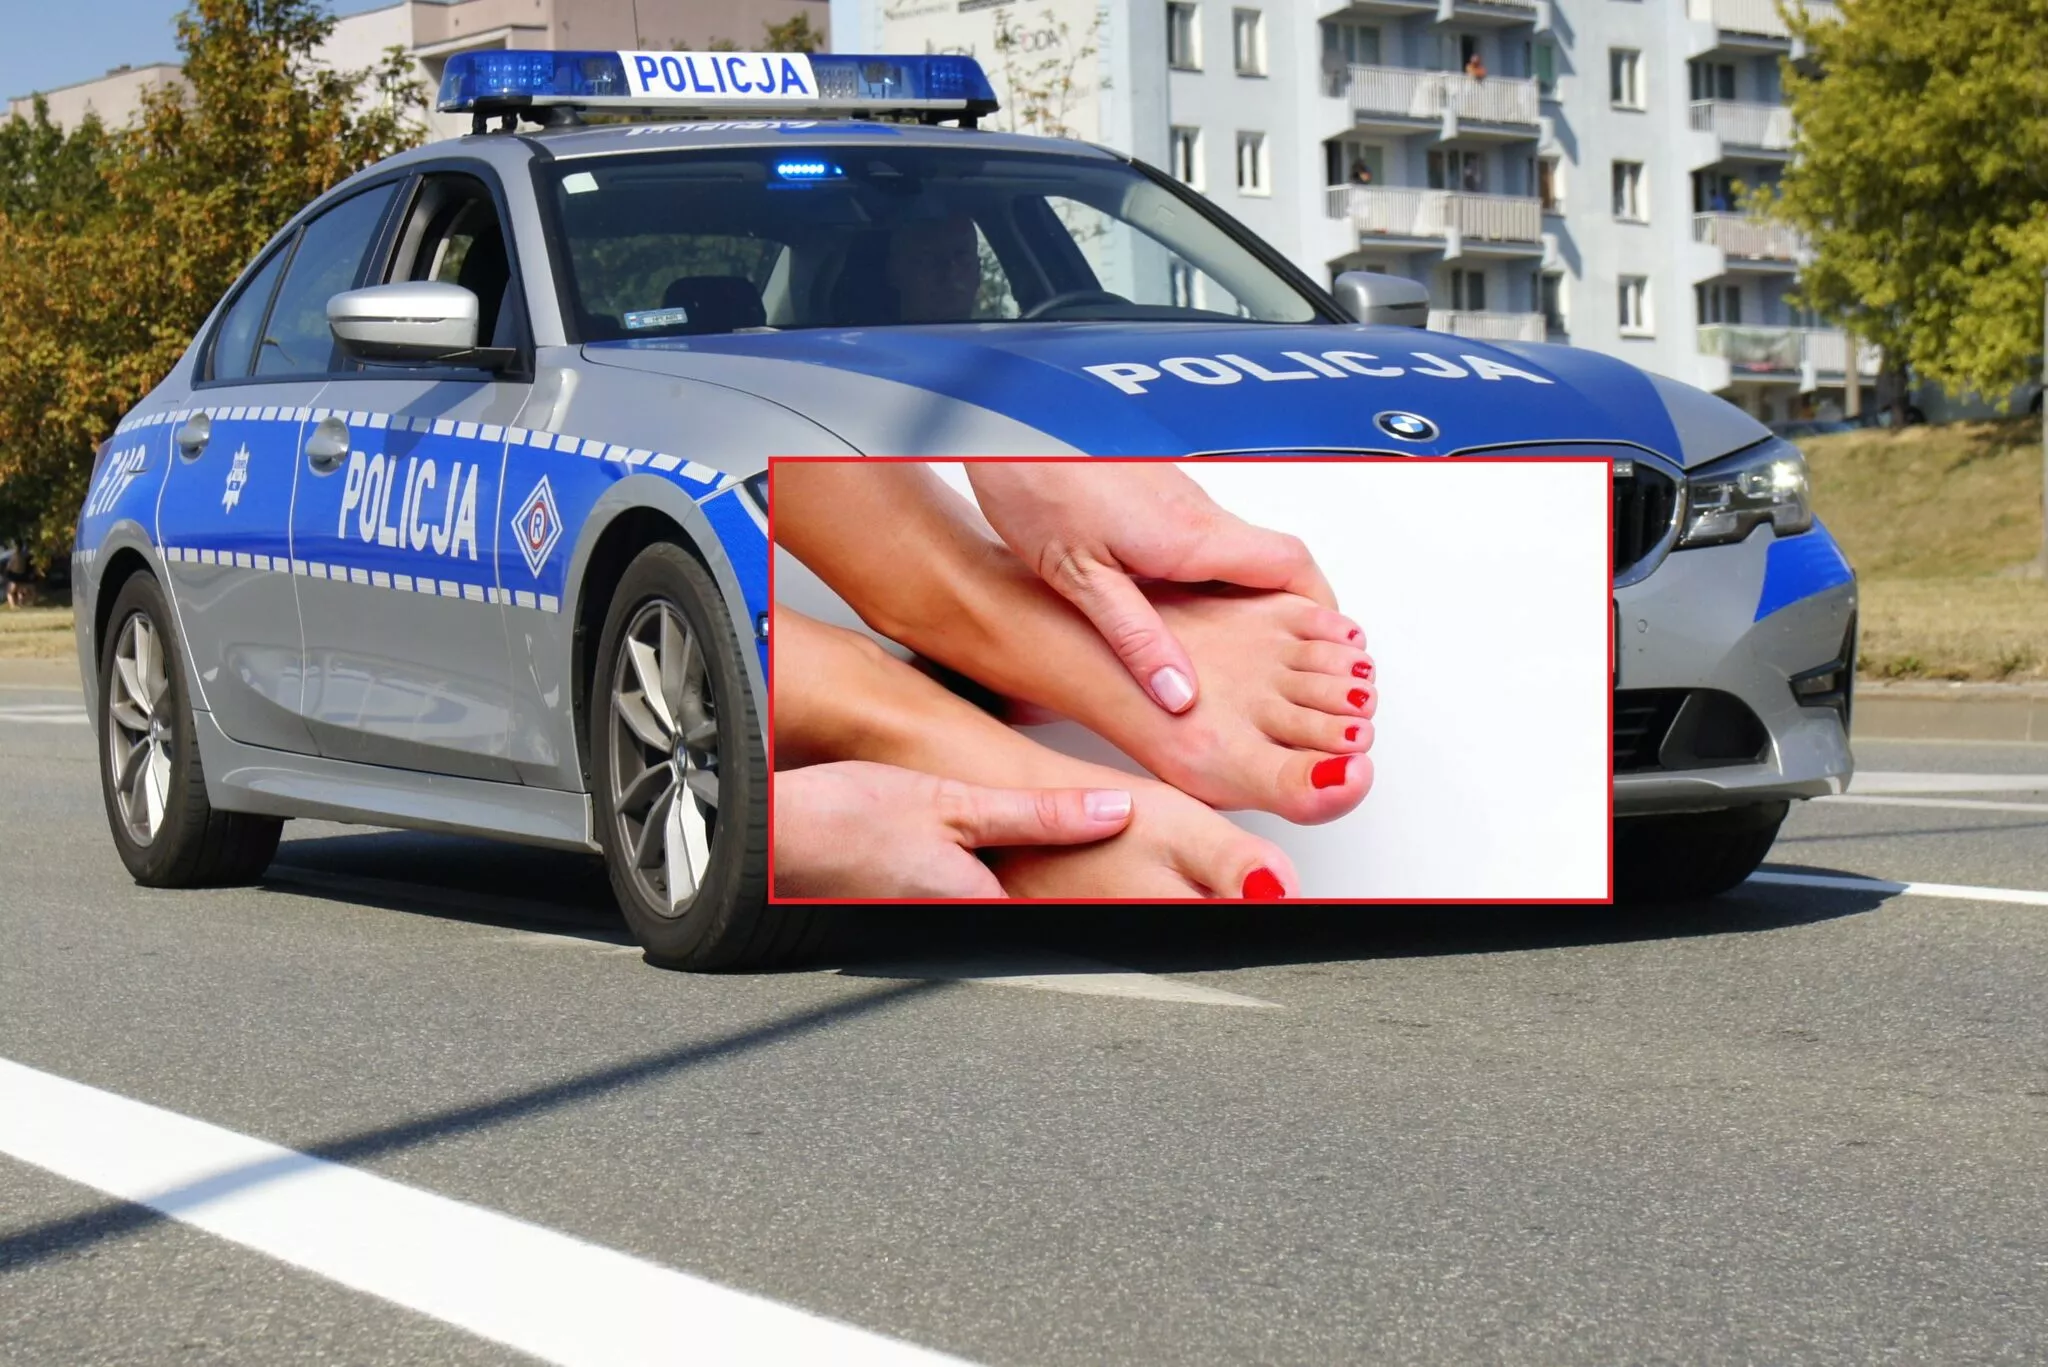 Policjant z małopolski prosił nastolatki o zdjęcia gołych stóp?